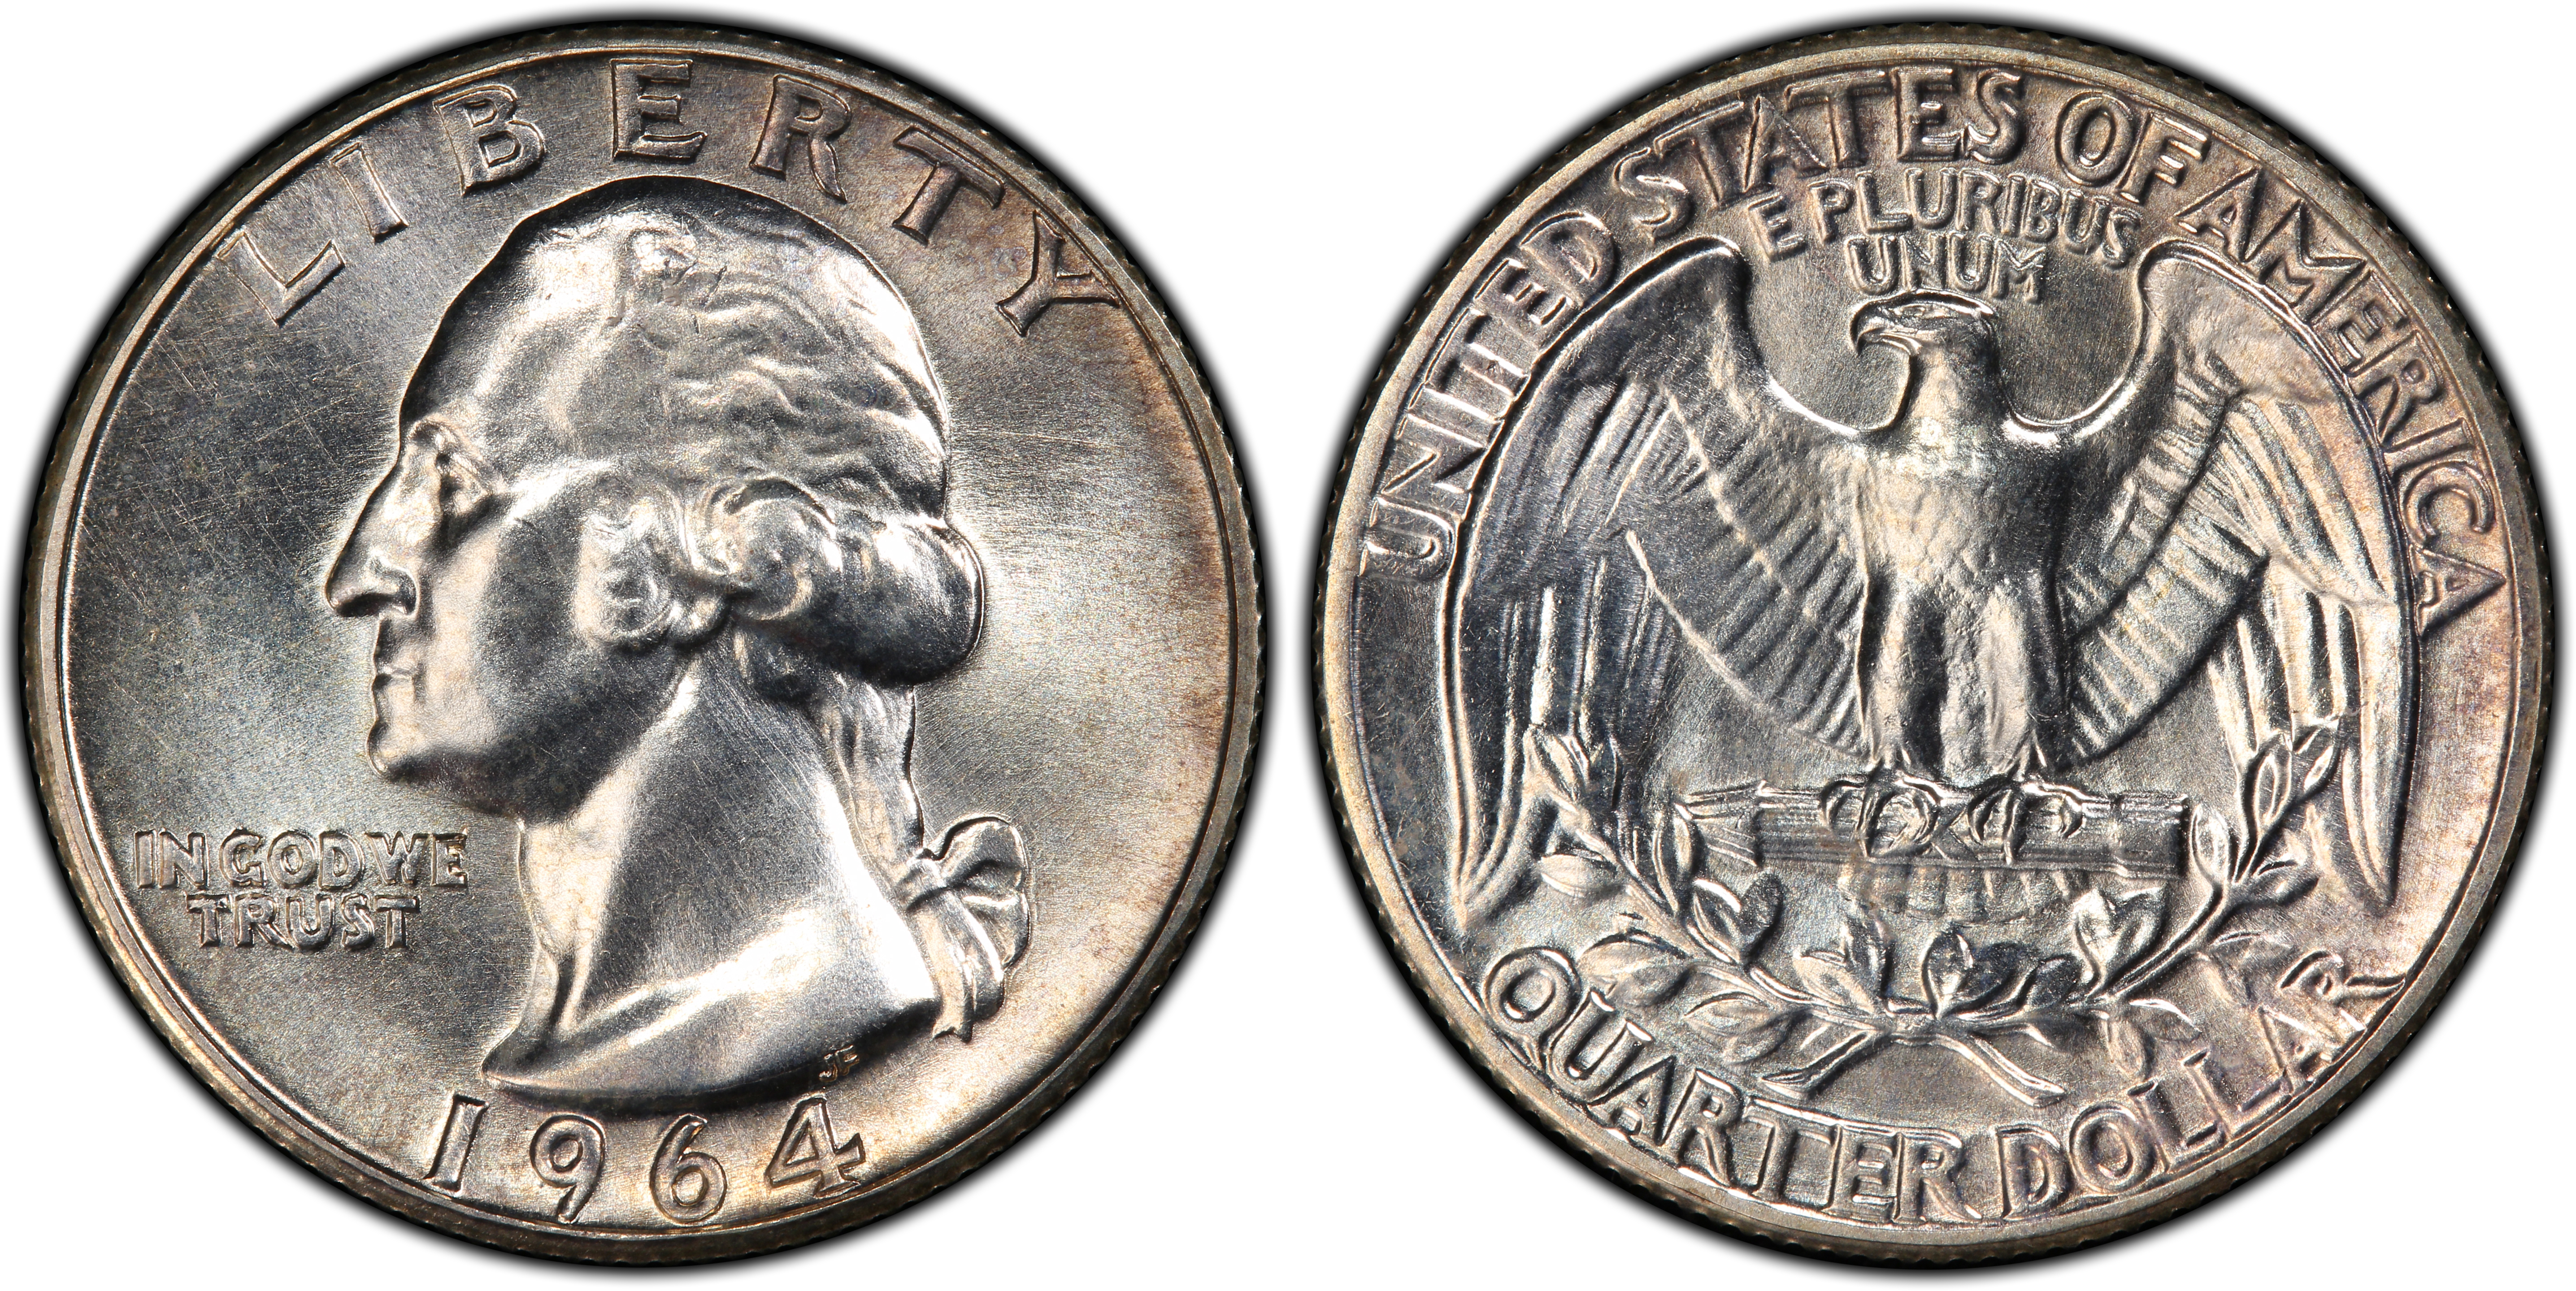 1964 Medal St. Louis Bicentennial (Regular Strike) U.S. Mint Medals - PCGS  CoinFacts